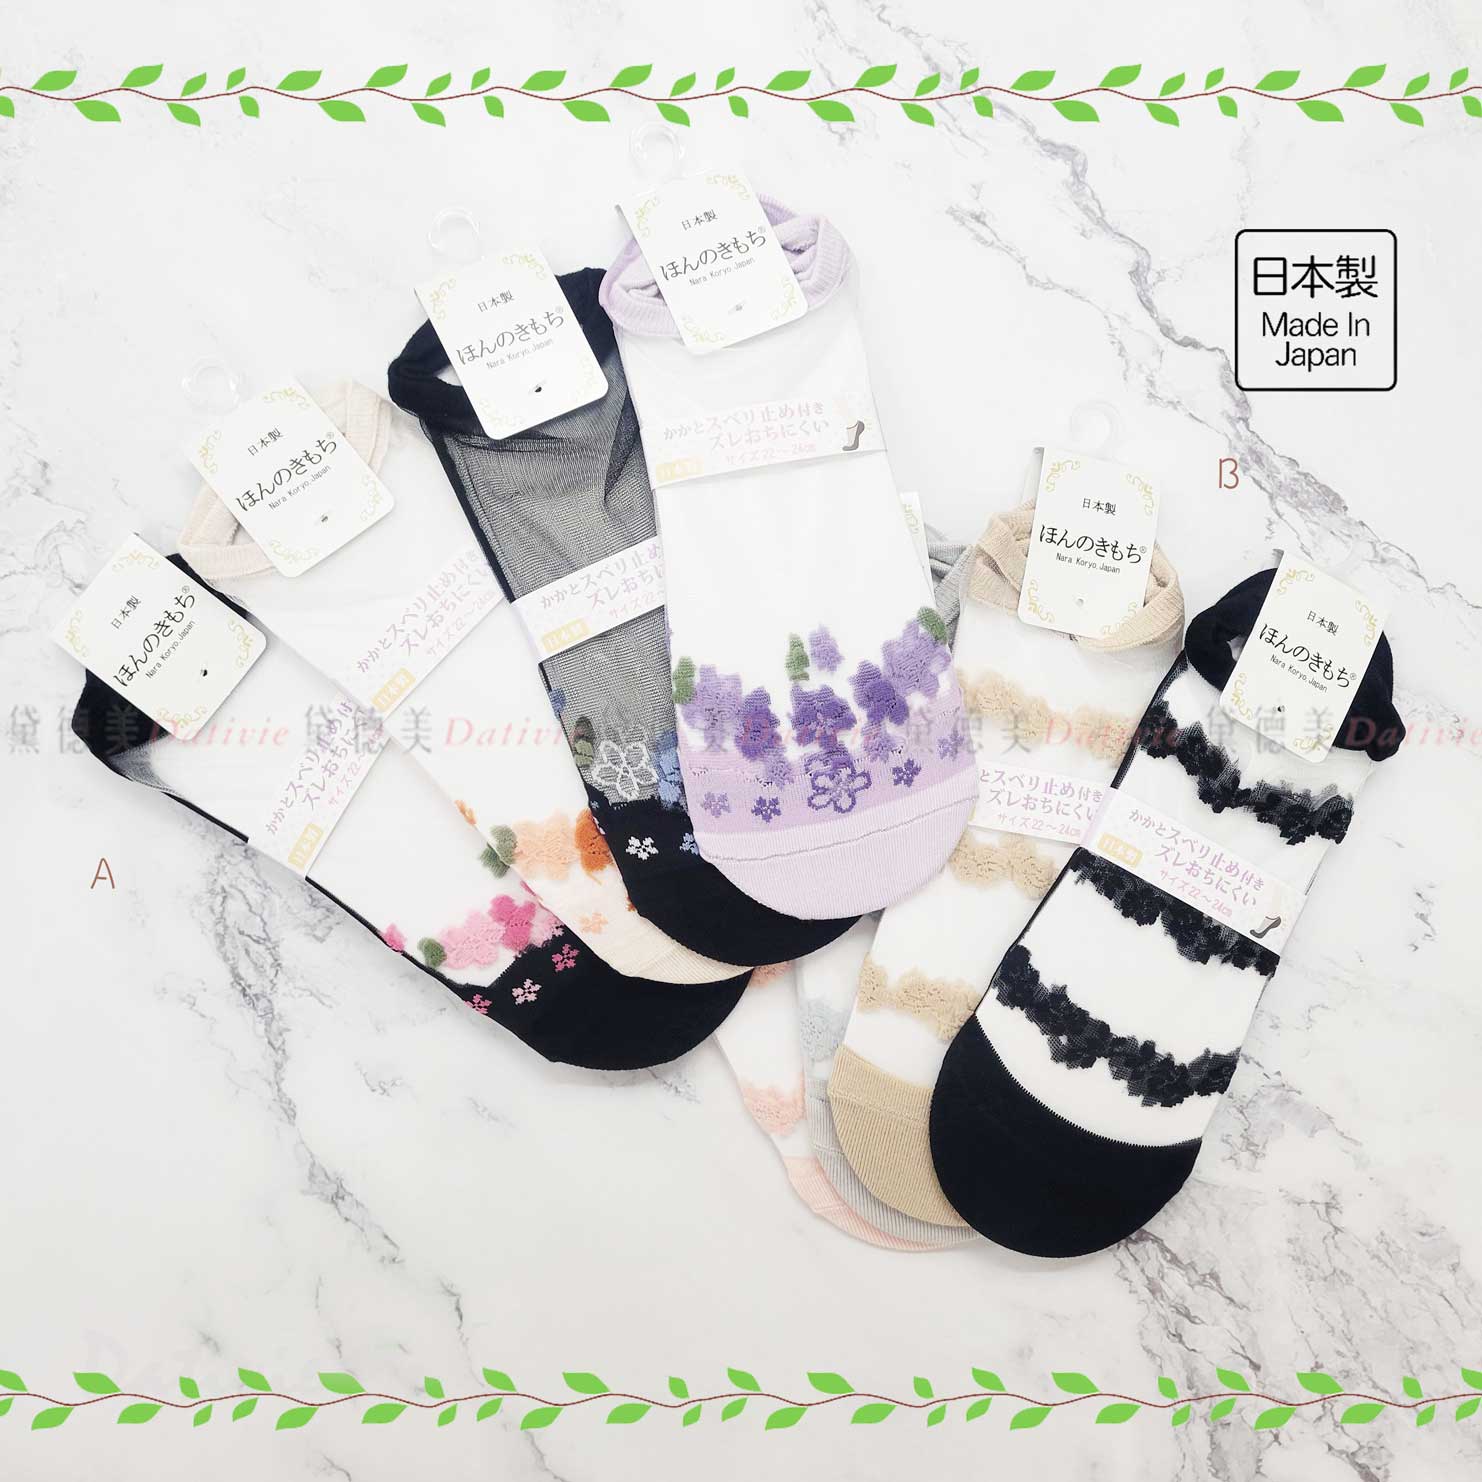 日本襪 透膚 花朵 踝襪 22-24cm-日本製造